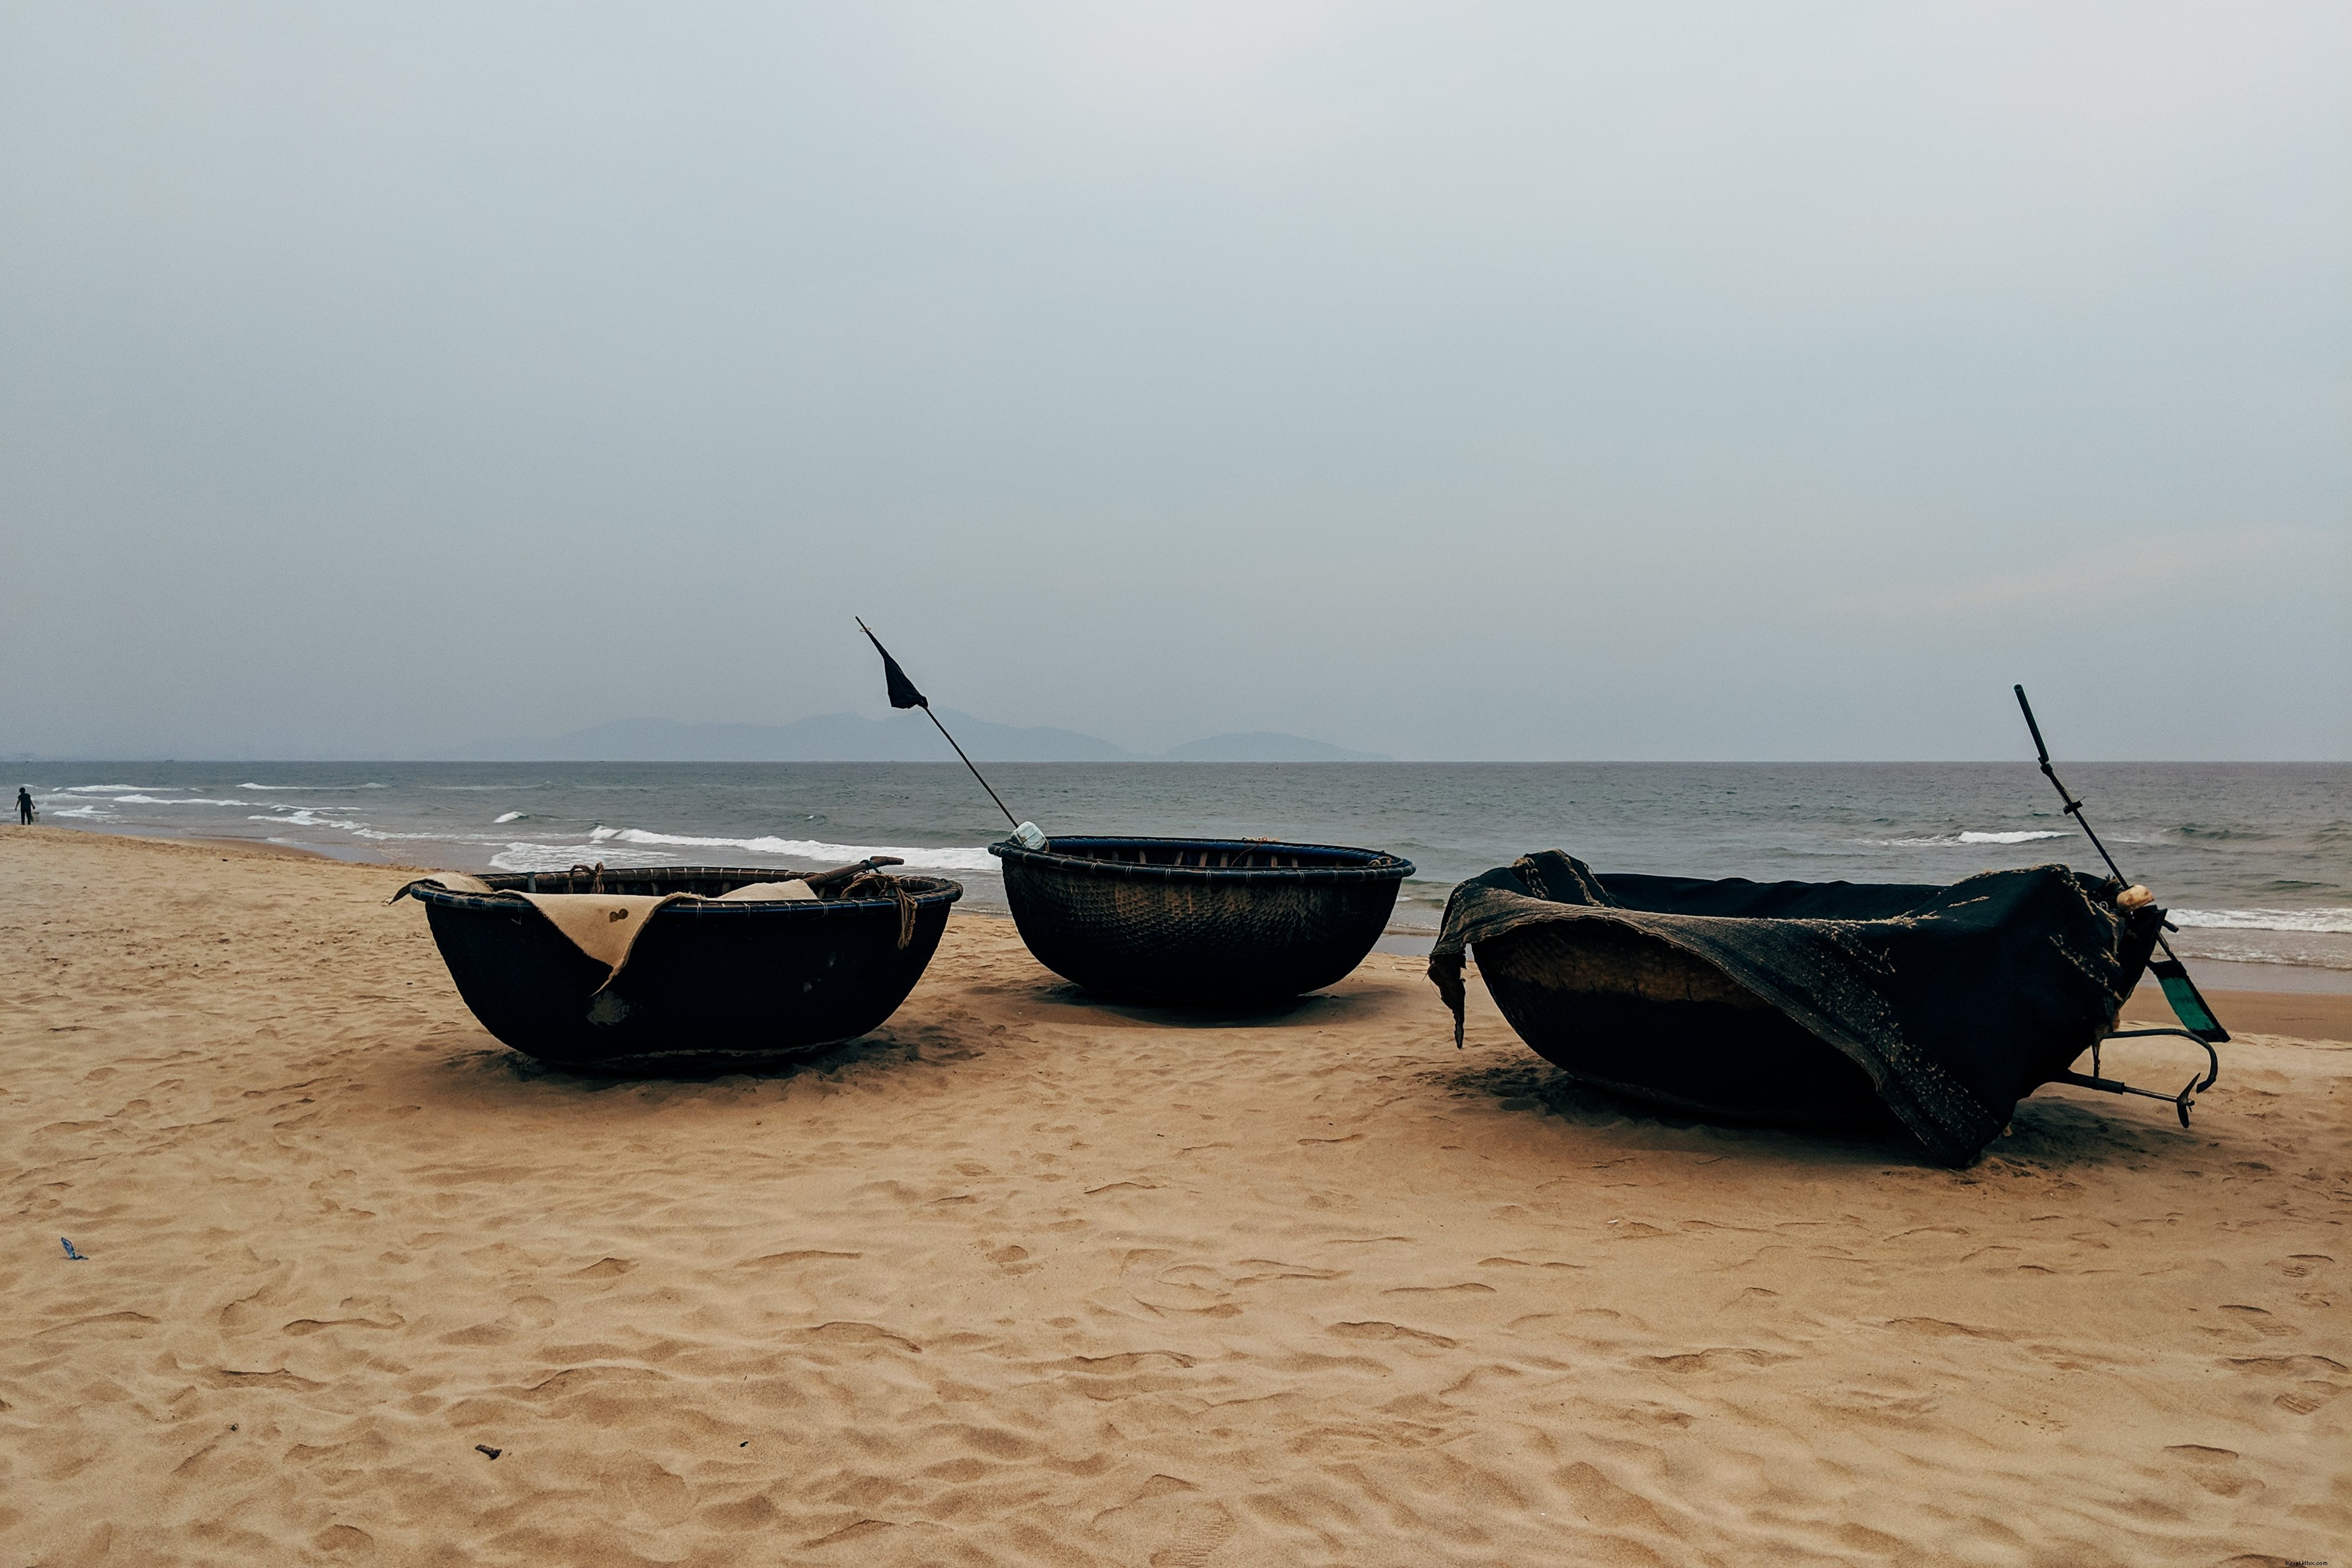 Bateaux Coracle dans une photo de plage 